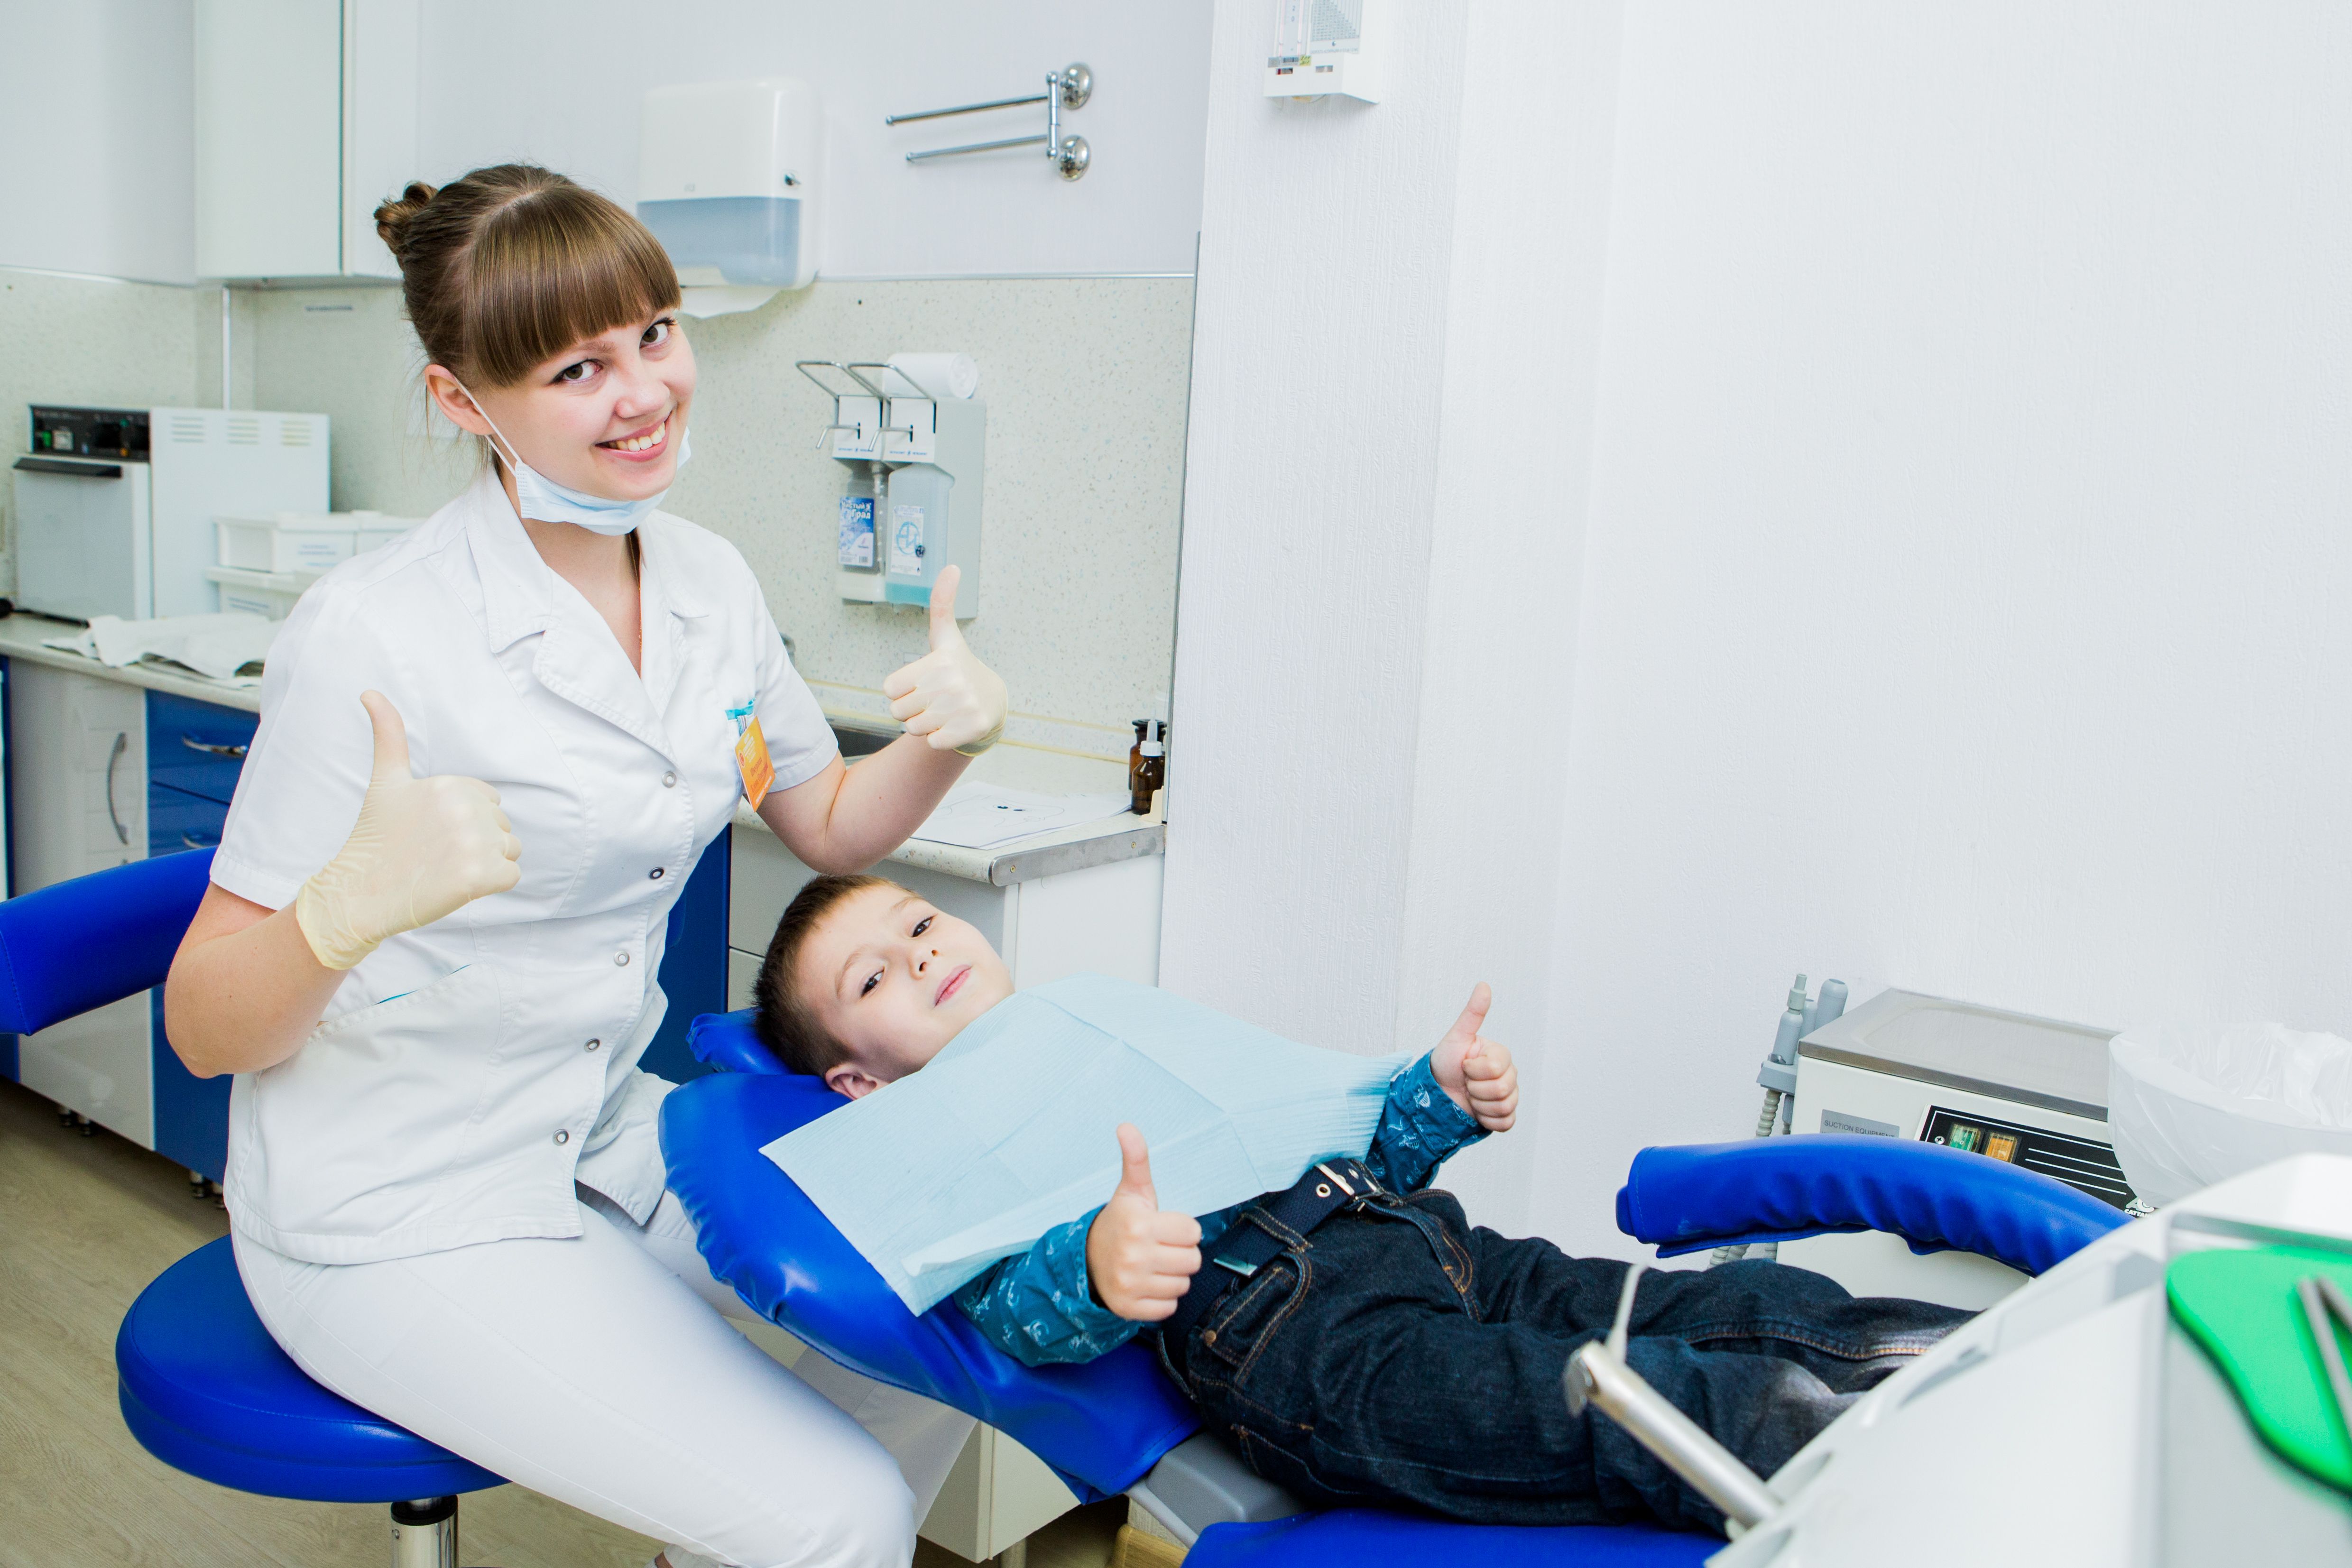 Первый визит к стоматологу с ребенком. Волнительный момент